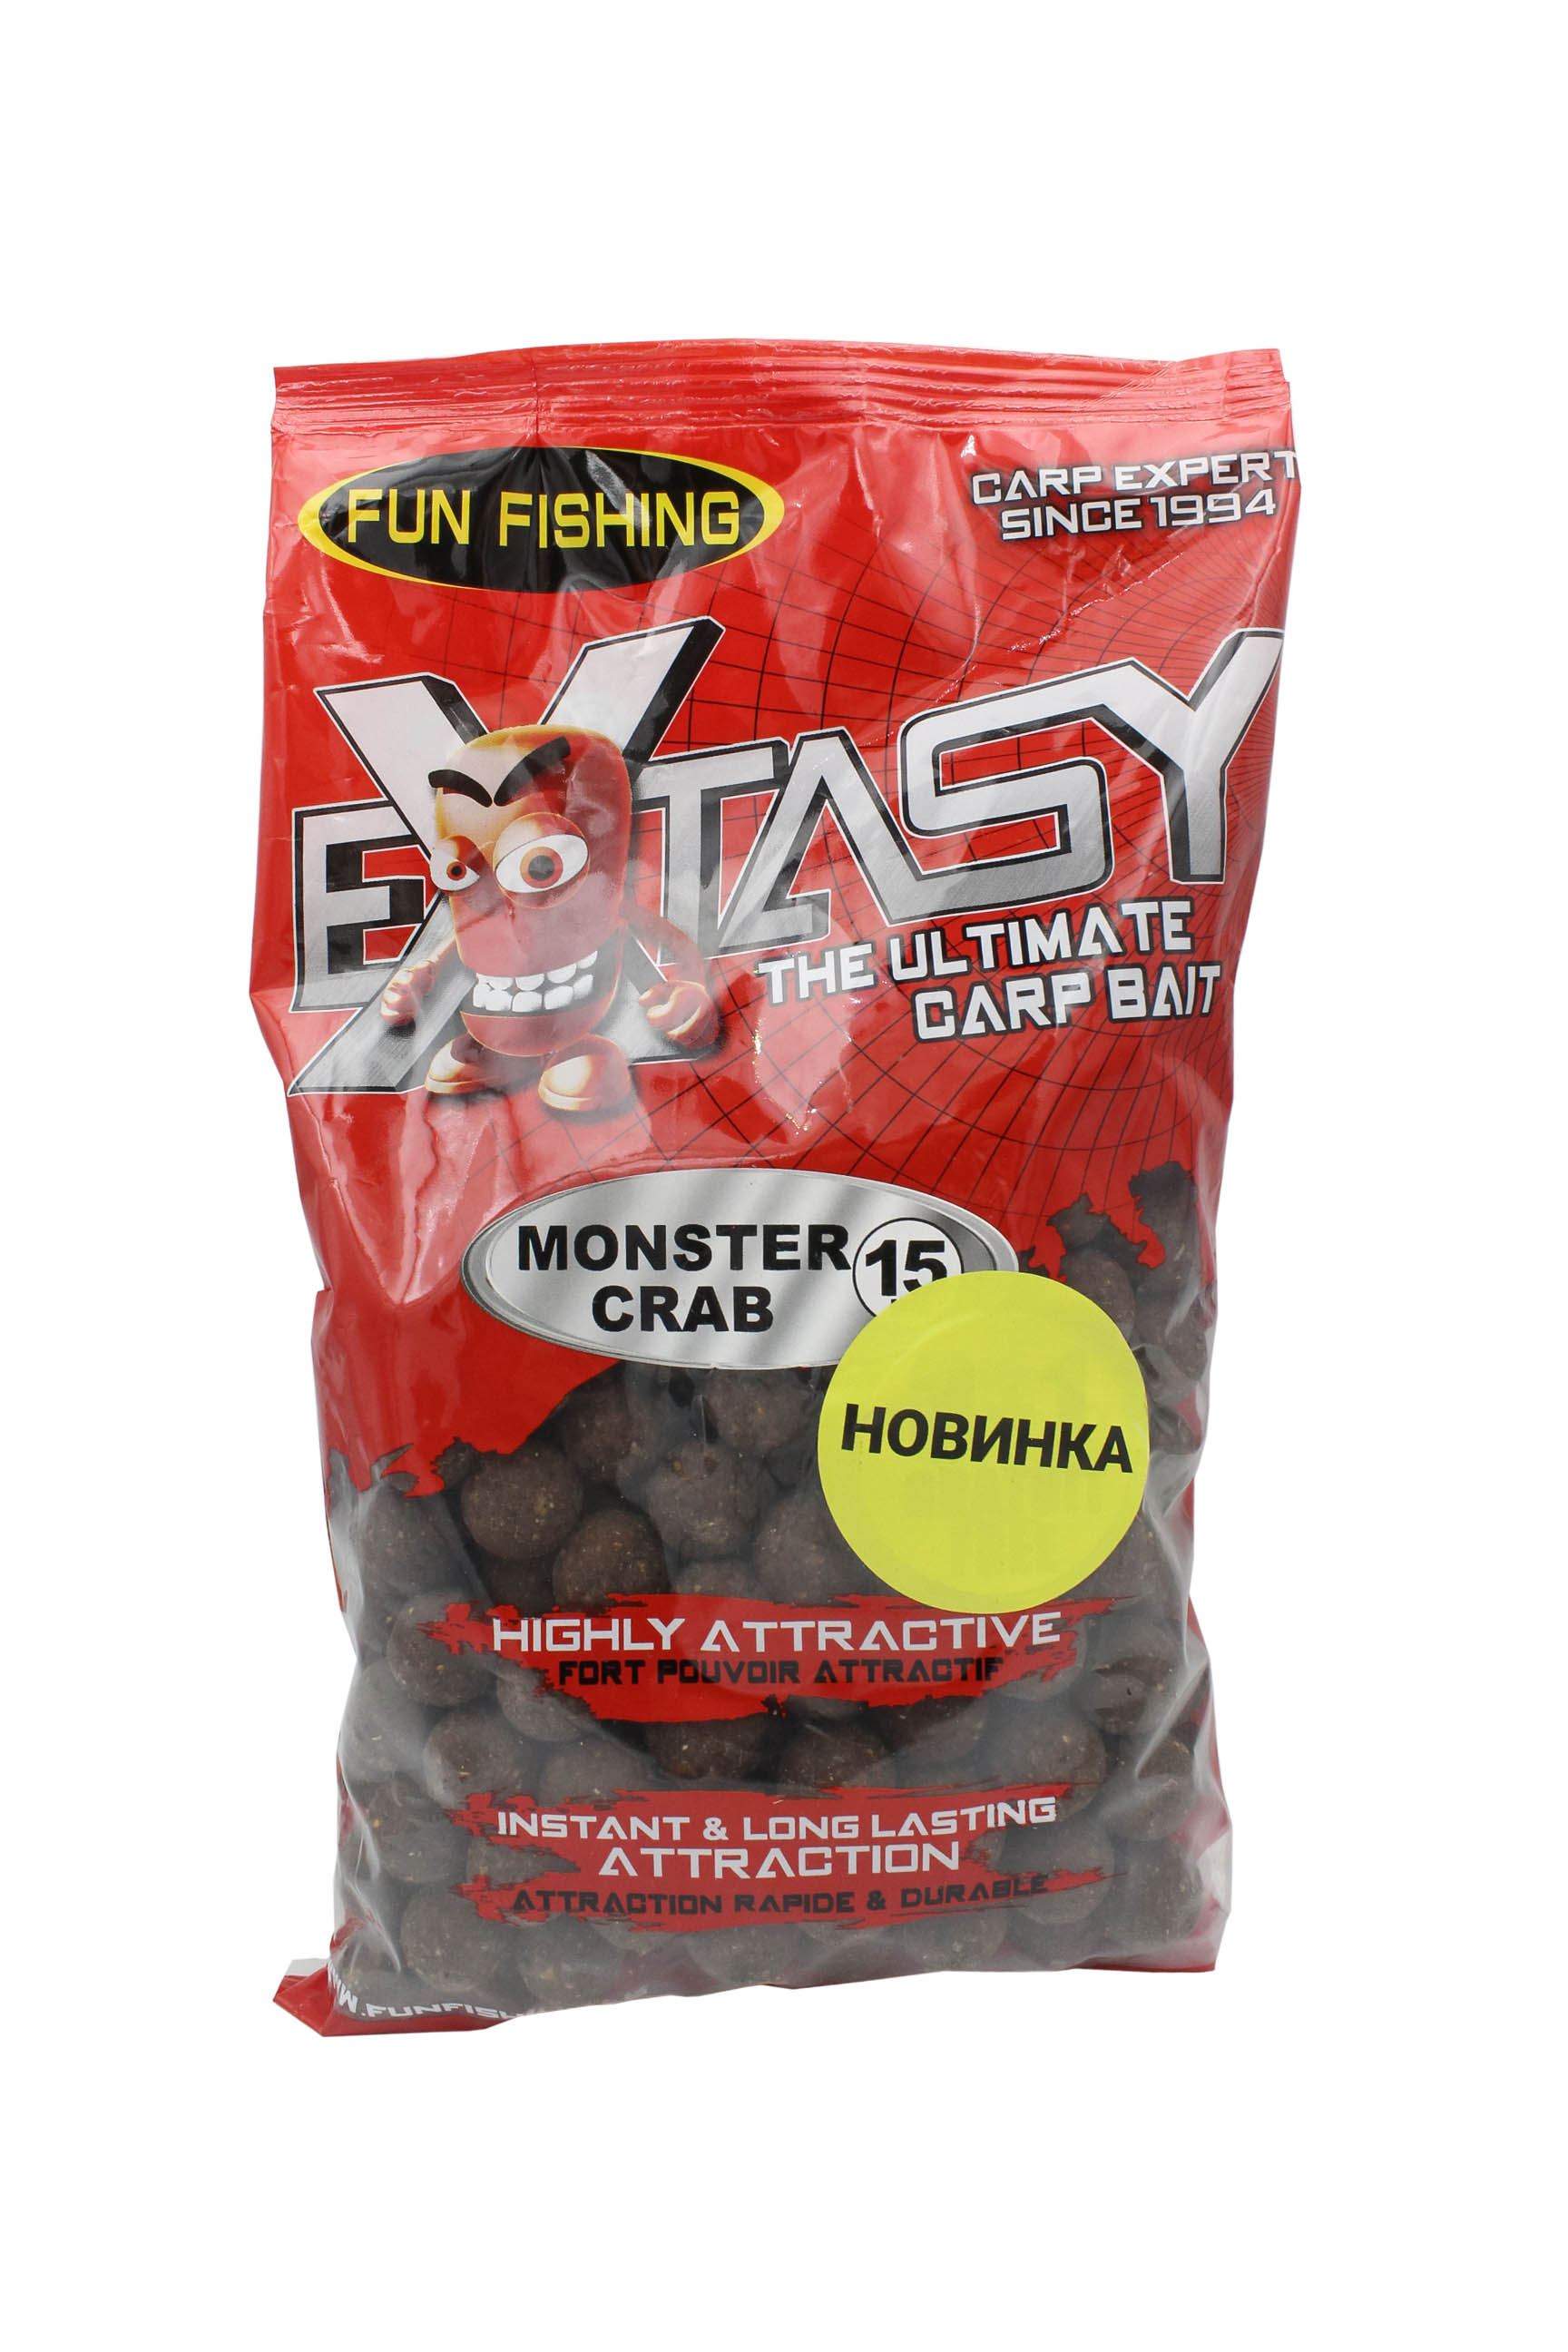 Бойлы Fun Fishing Extasy Monster Crab 15мм 800г   - фото 1